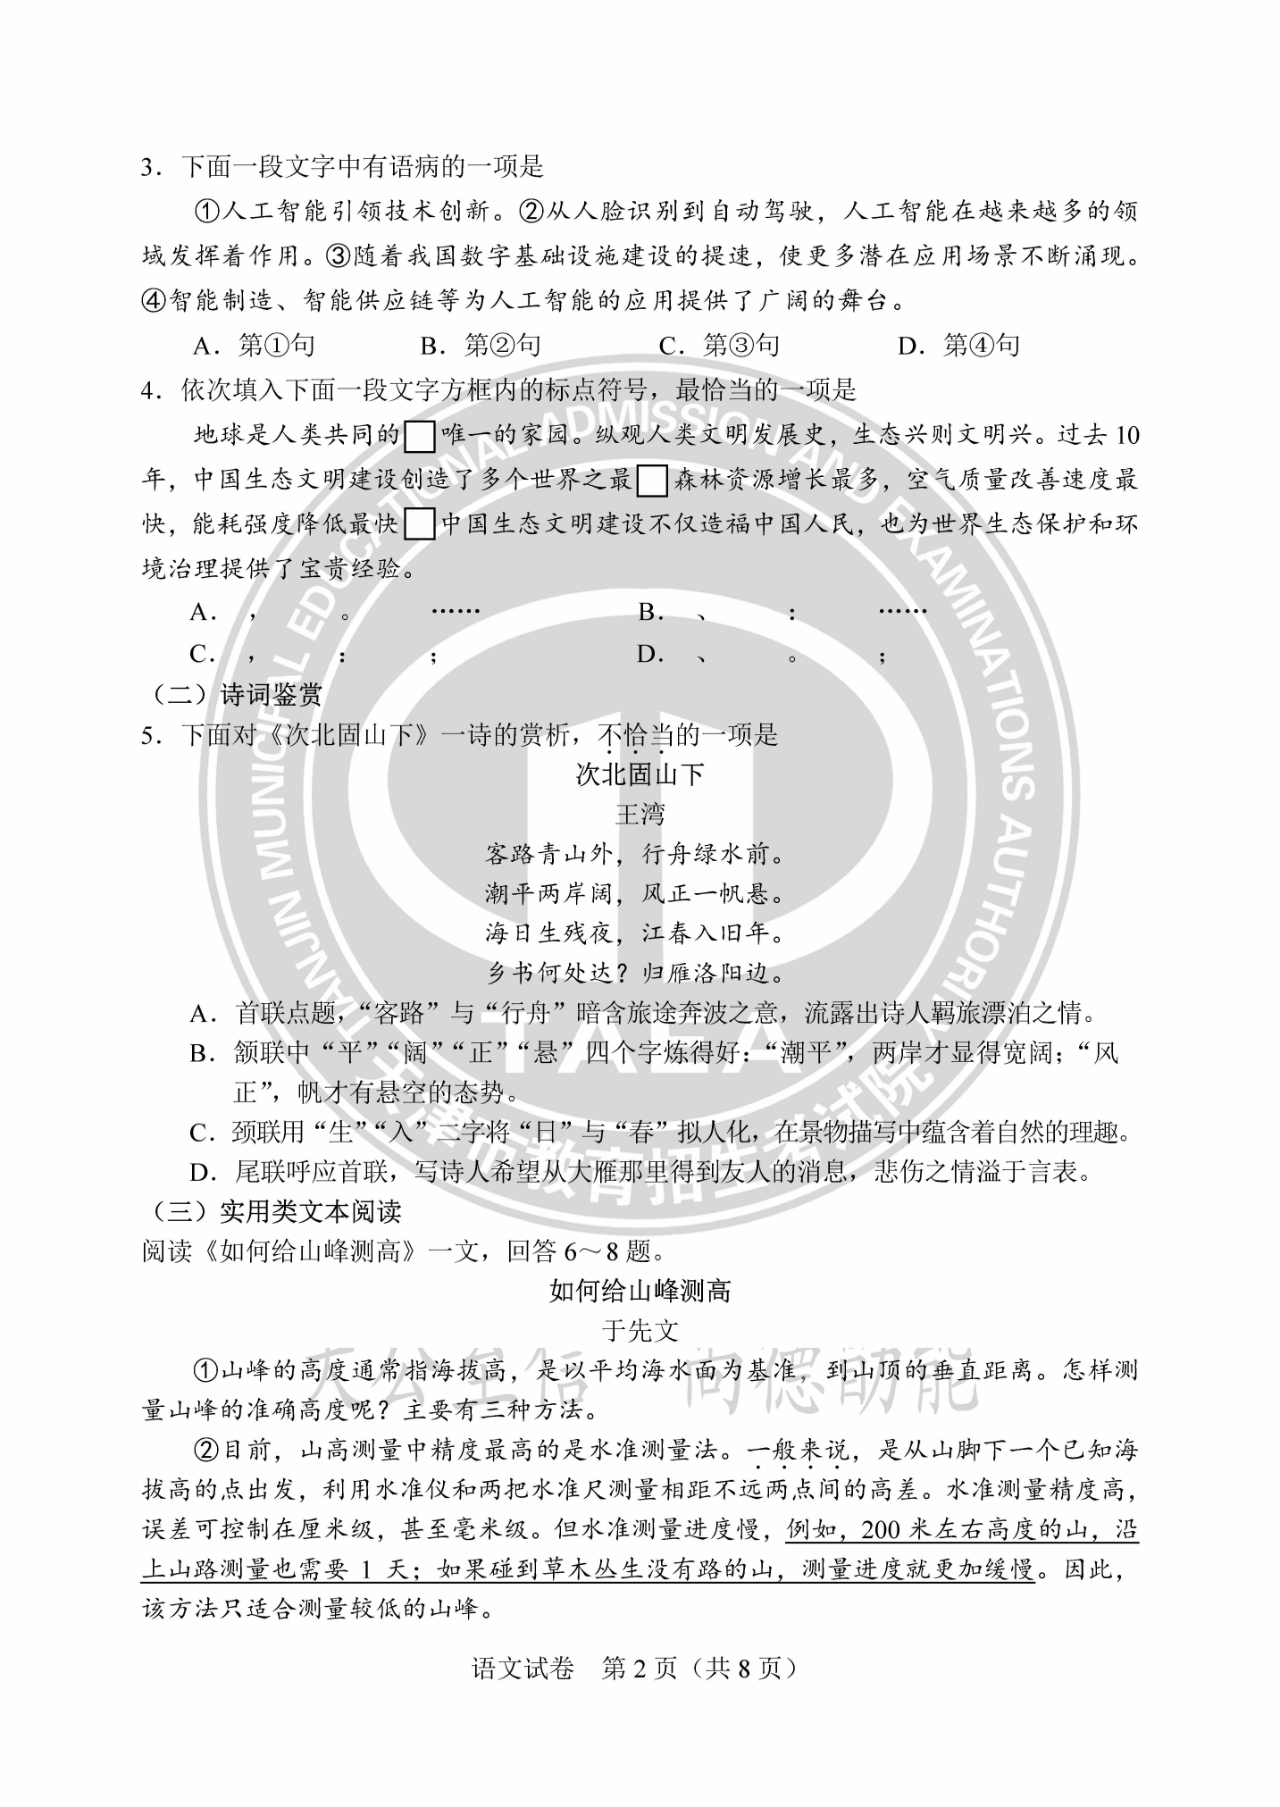 2023天津中考语文试题及答案